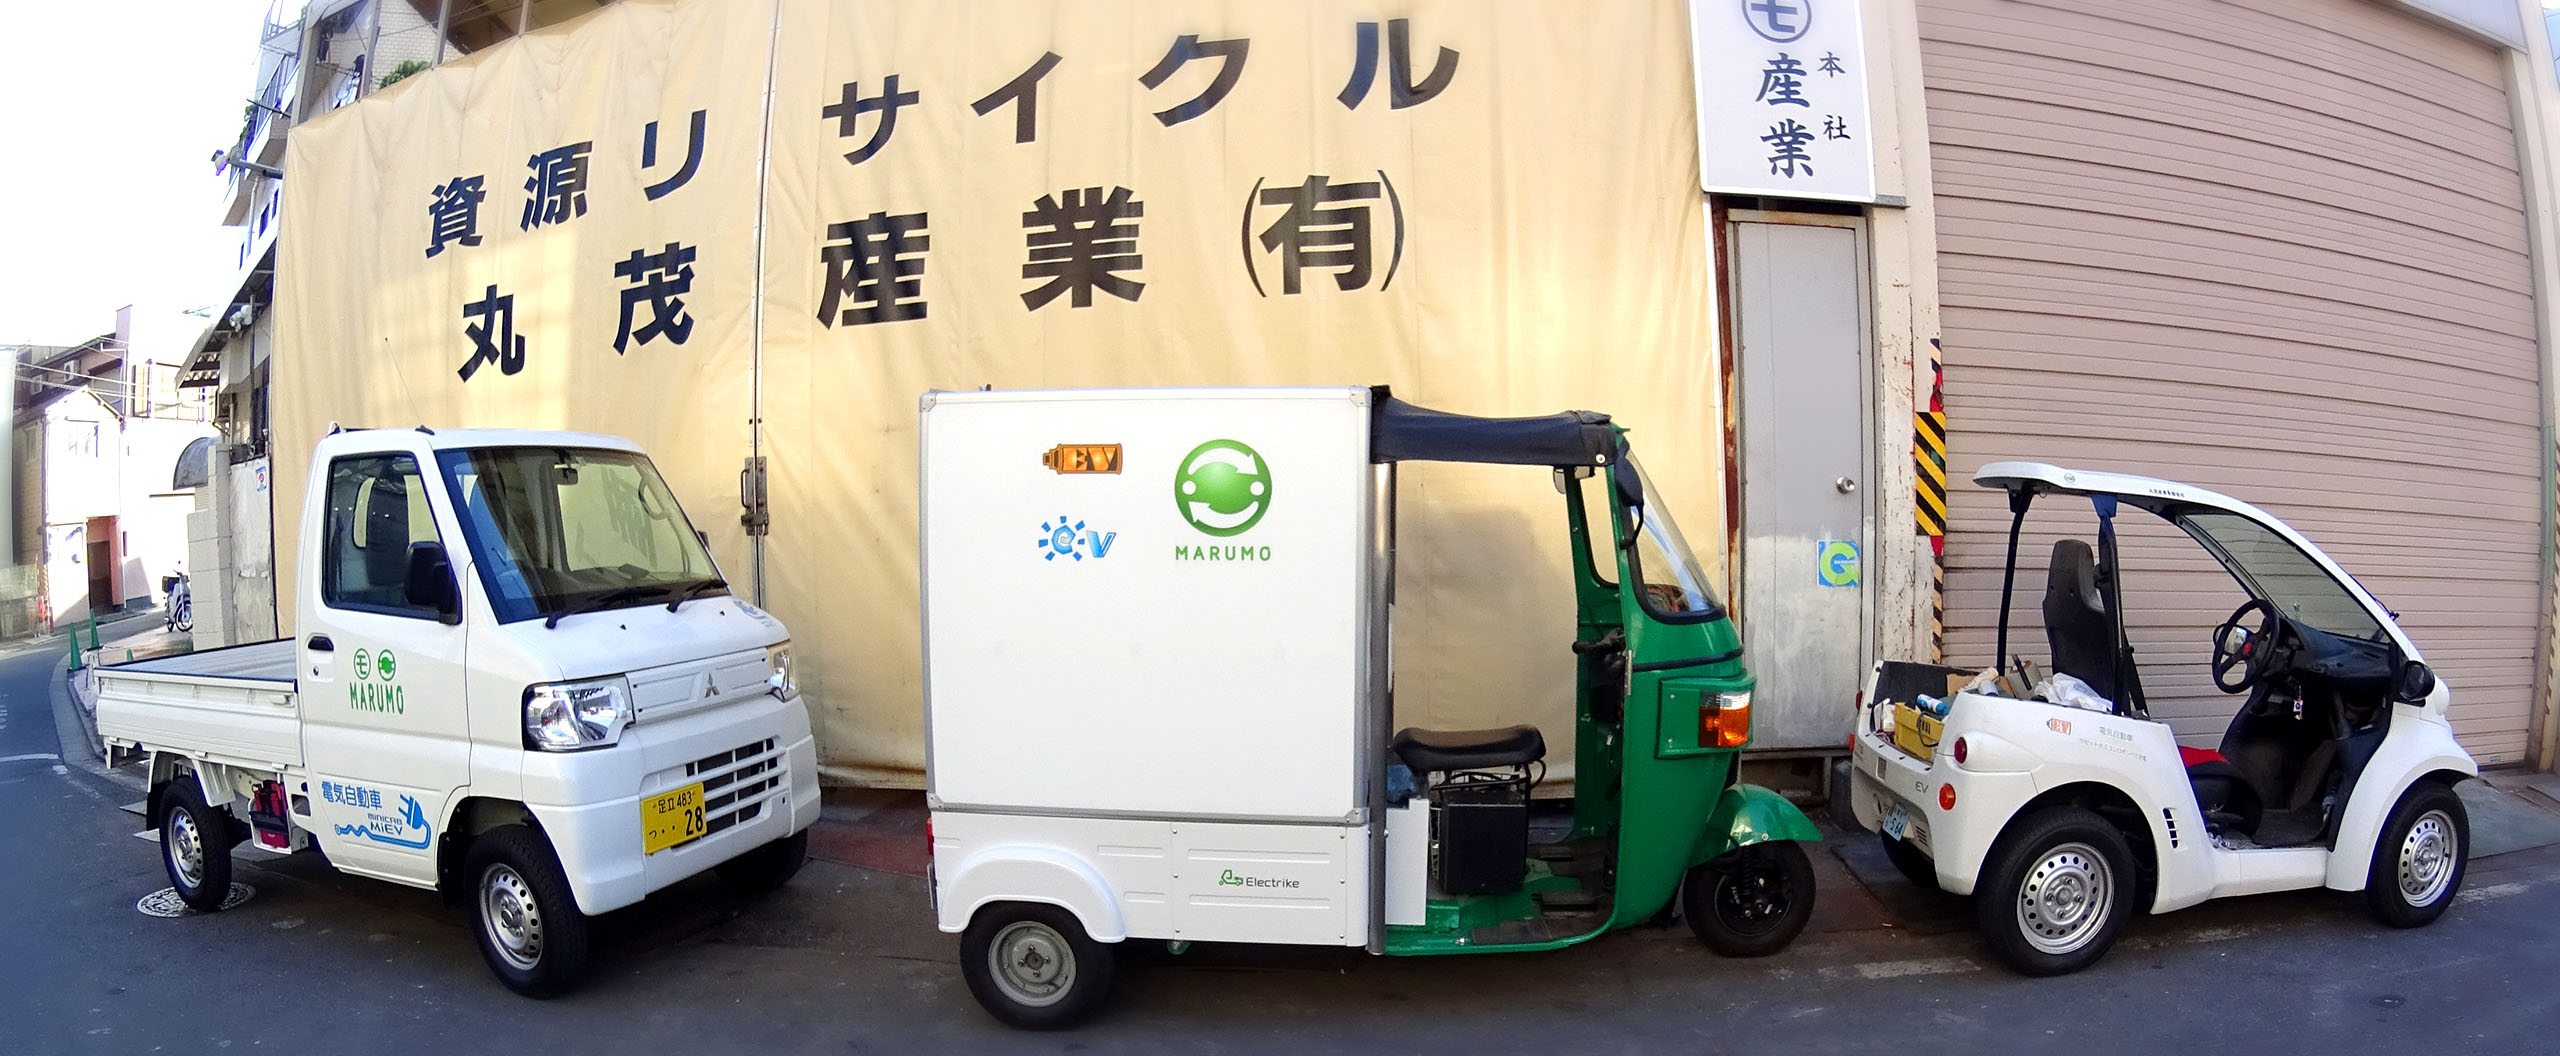 丸茂産業有限会社は、東京都荒川区でリサイクル業と一般廃棄物処理業と産業廃棄物処理業を行っています。